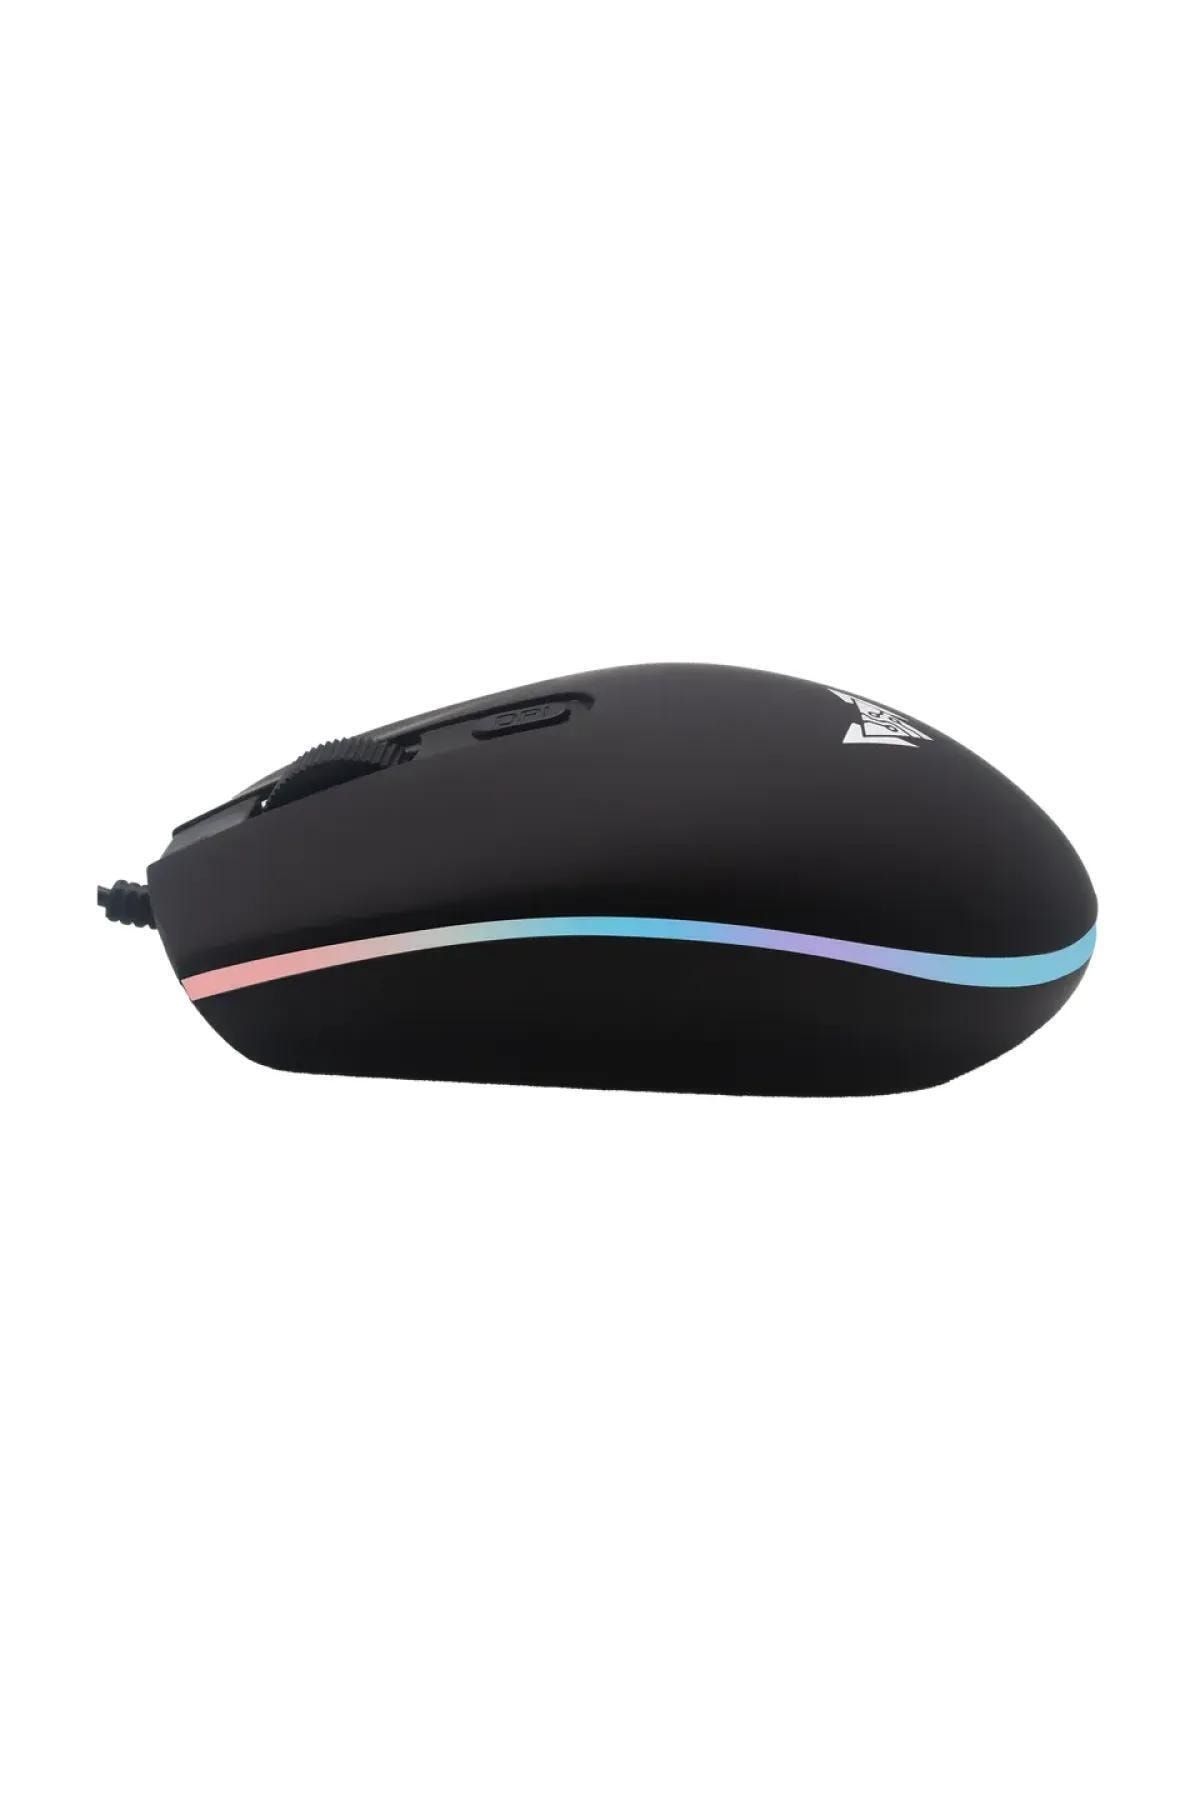 Crown Micro PULSAR RGB Aydınlatmalı Kablolu Usb Gaming & Ofis Mouse (CMGM-239)